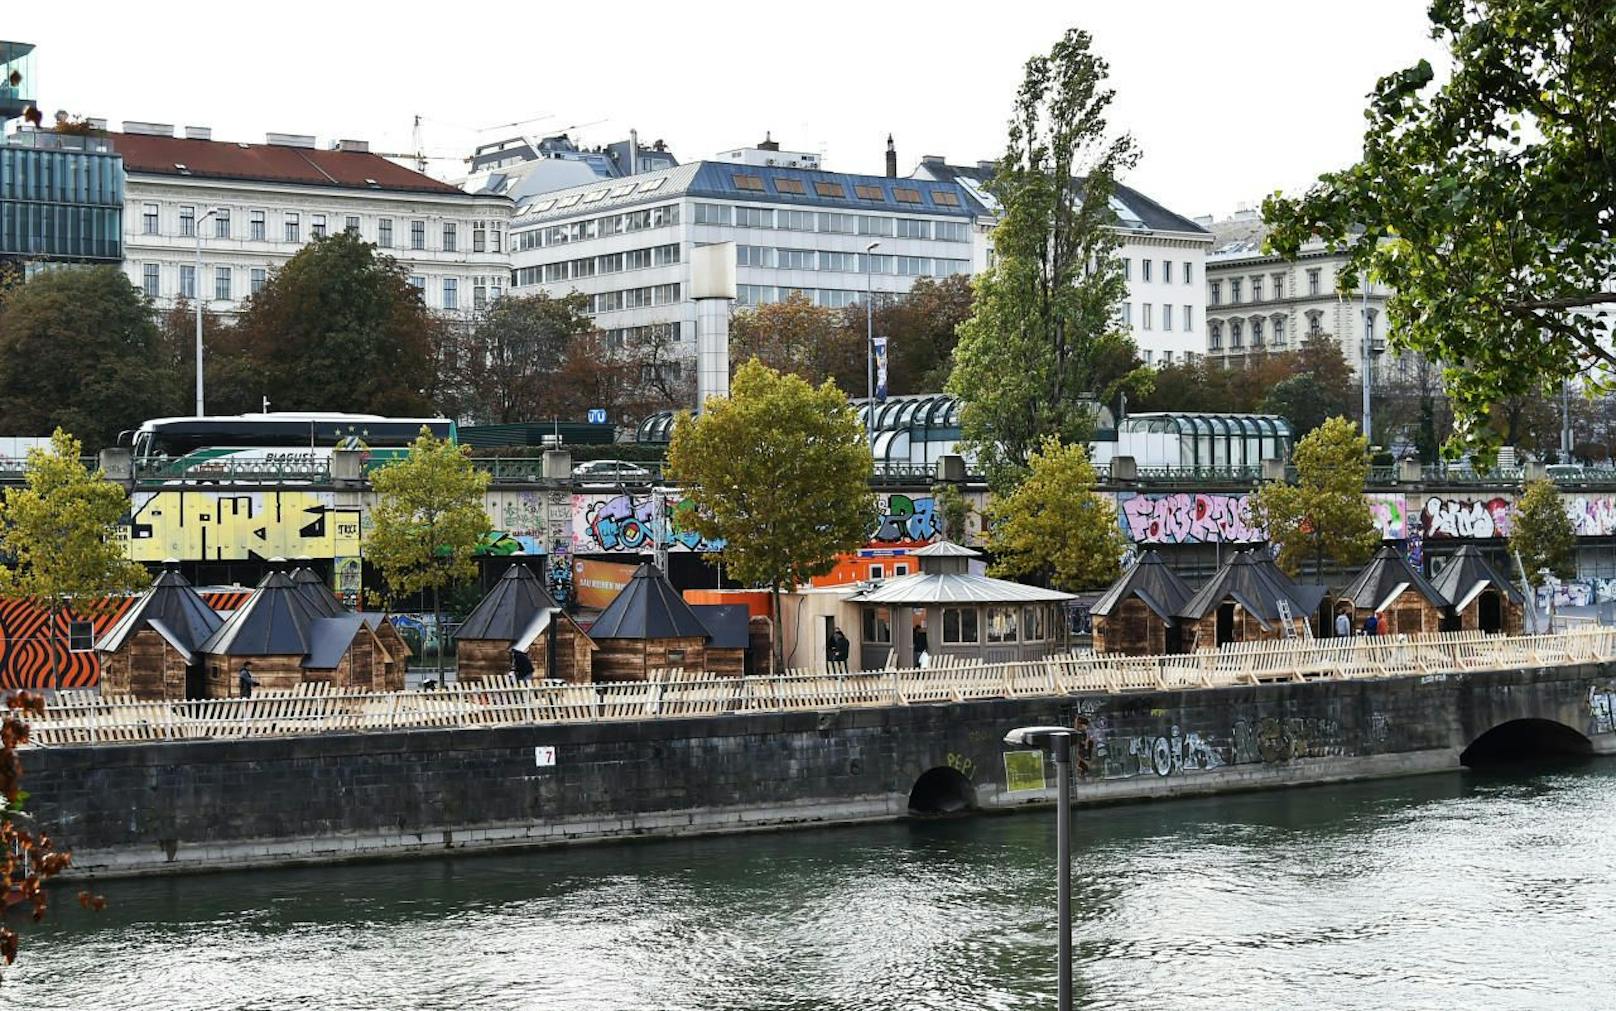 Das Feuerdorf am Wiener Donaukanal ist eines von sechs Lokalen, dessen Flächen neu ausgeschrieben werden. Der Erste und Zweite Bezirk setzen sich dafür ein, dass es auch weiterhin kleinere Lokale geben muss und fordern eine Neuausschreibung. (Bild: Feuerdorf)